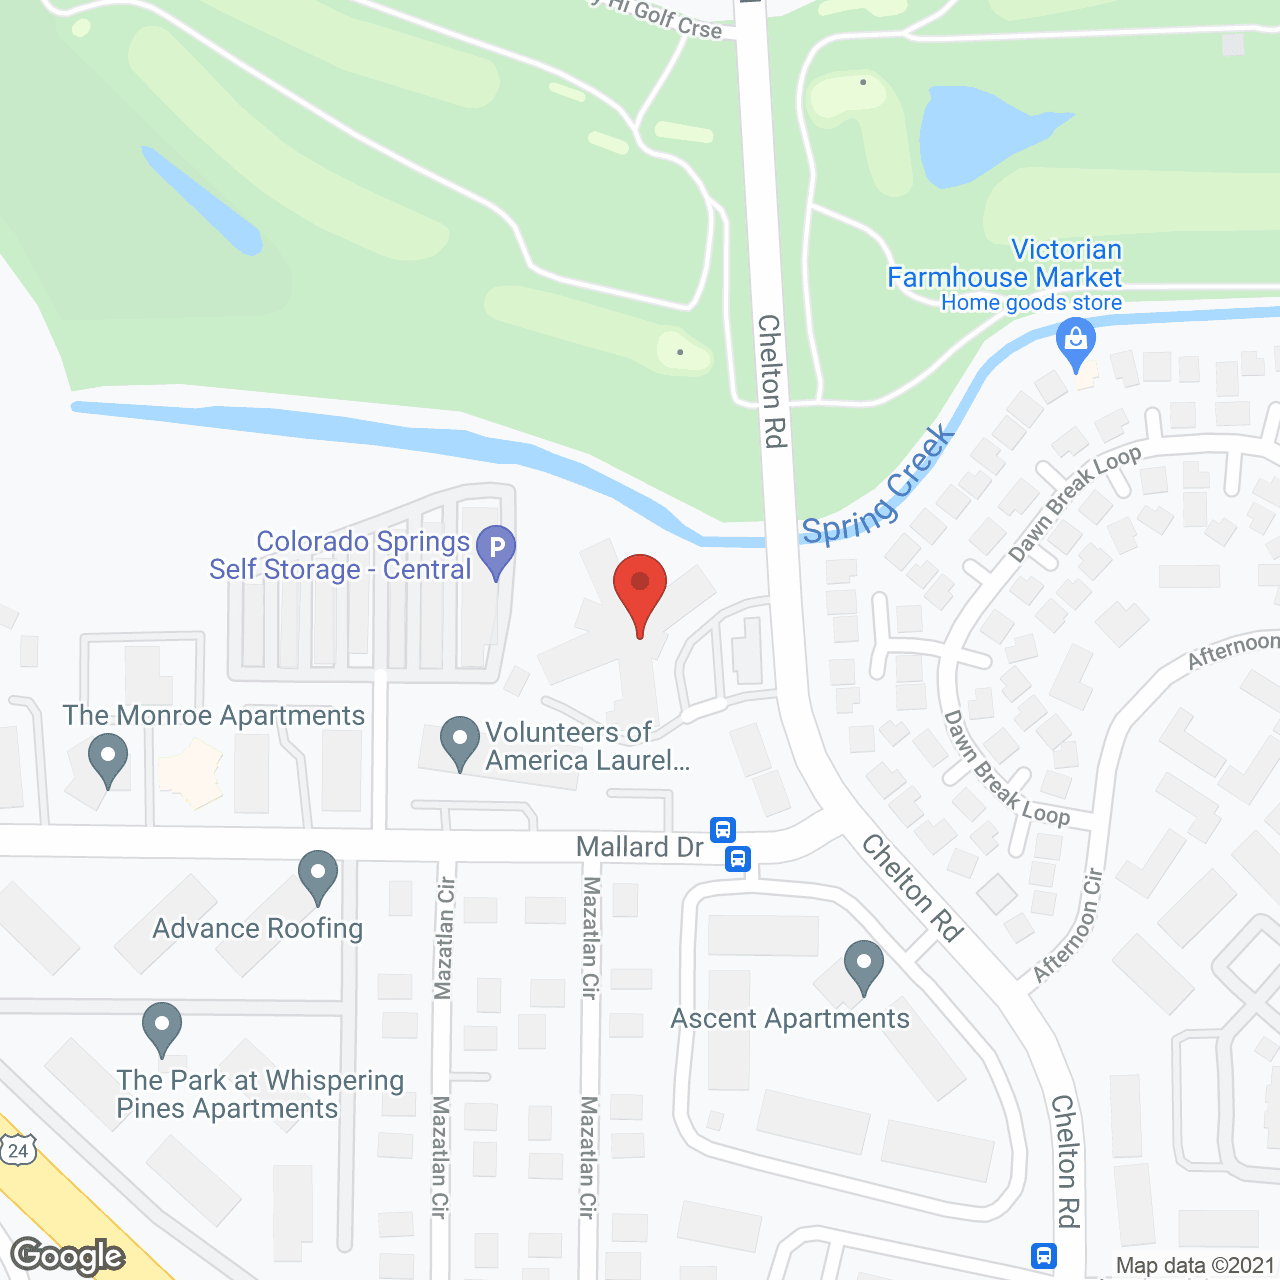 Laurel Manor Care Center in google map